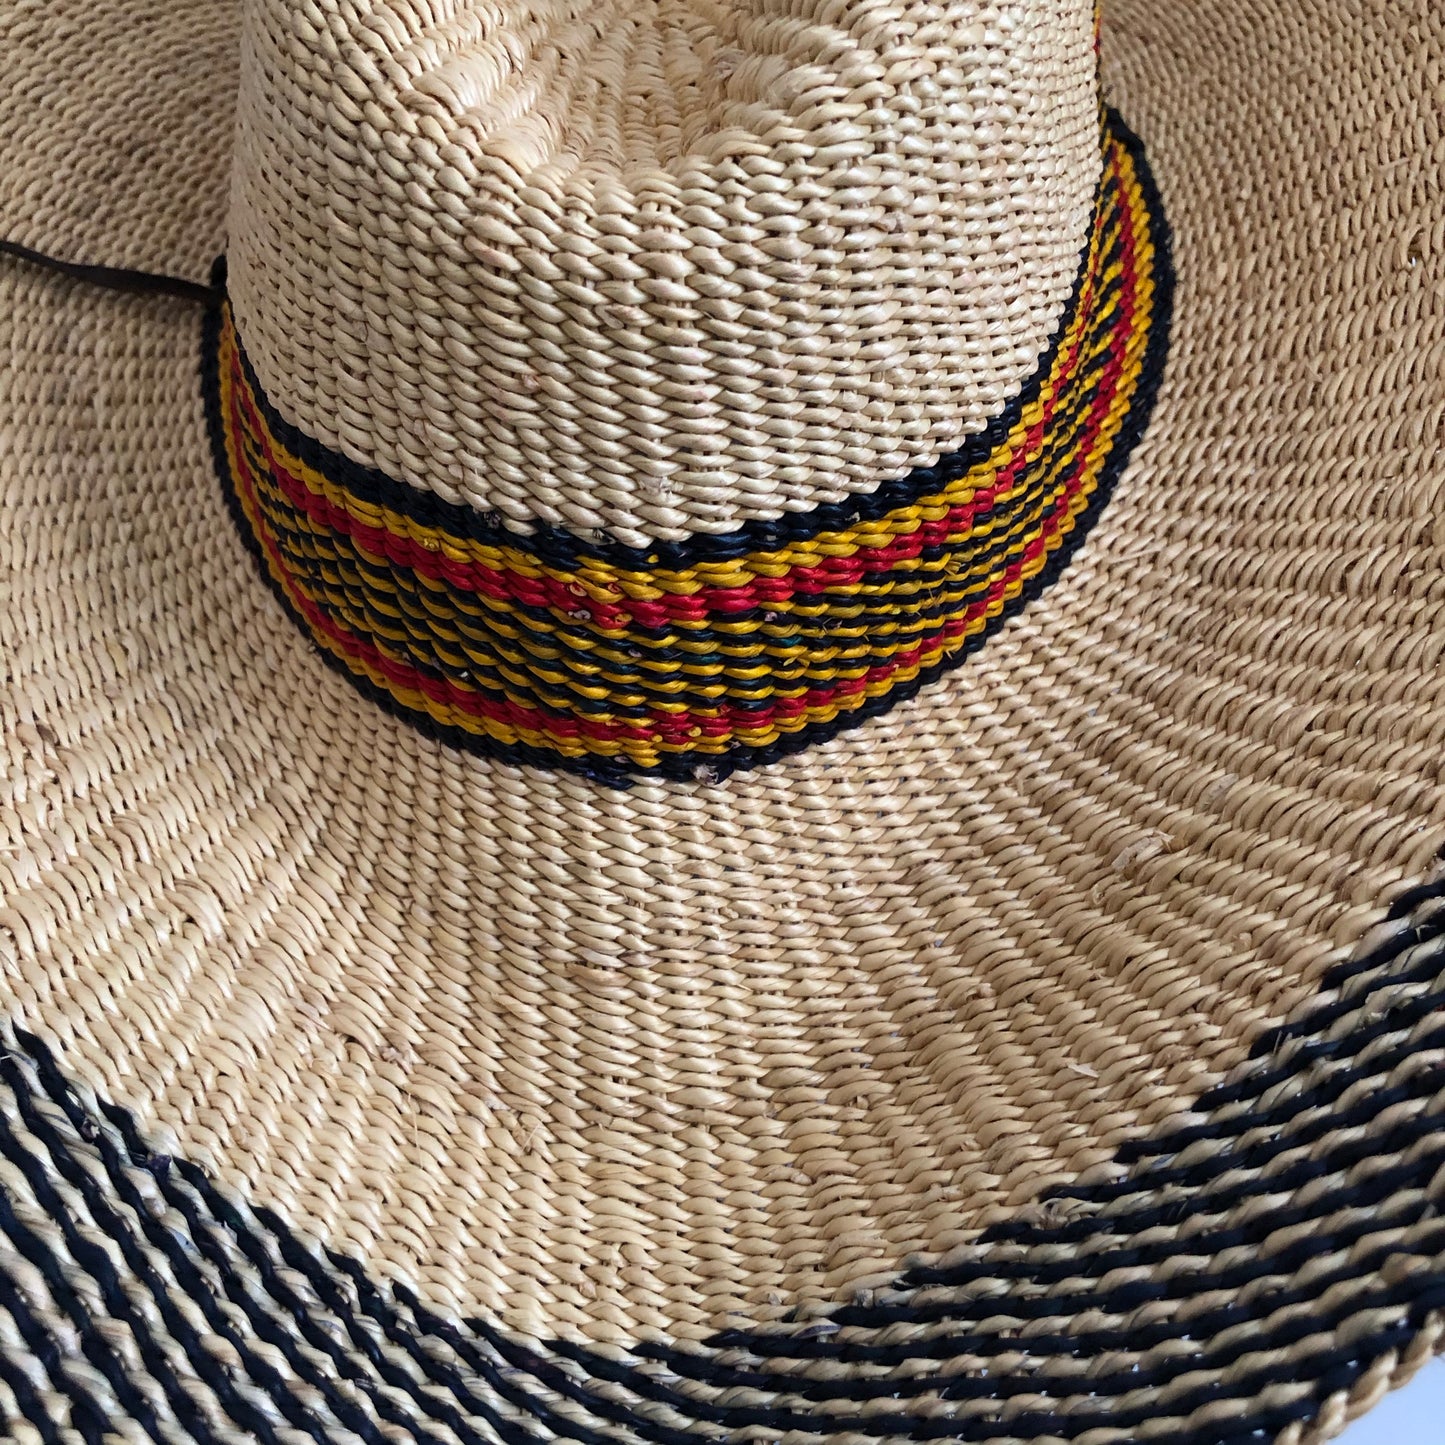 Summer hat - 2